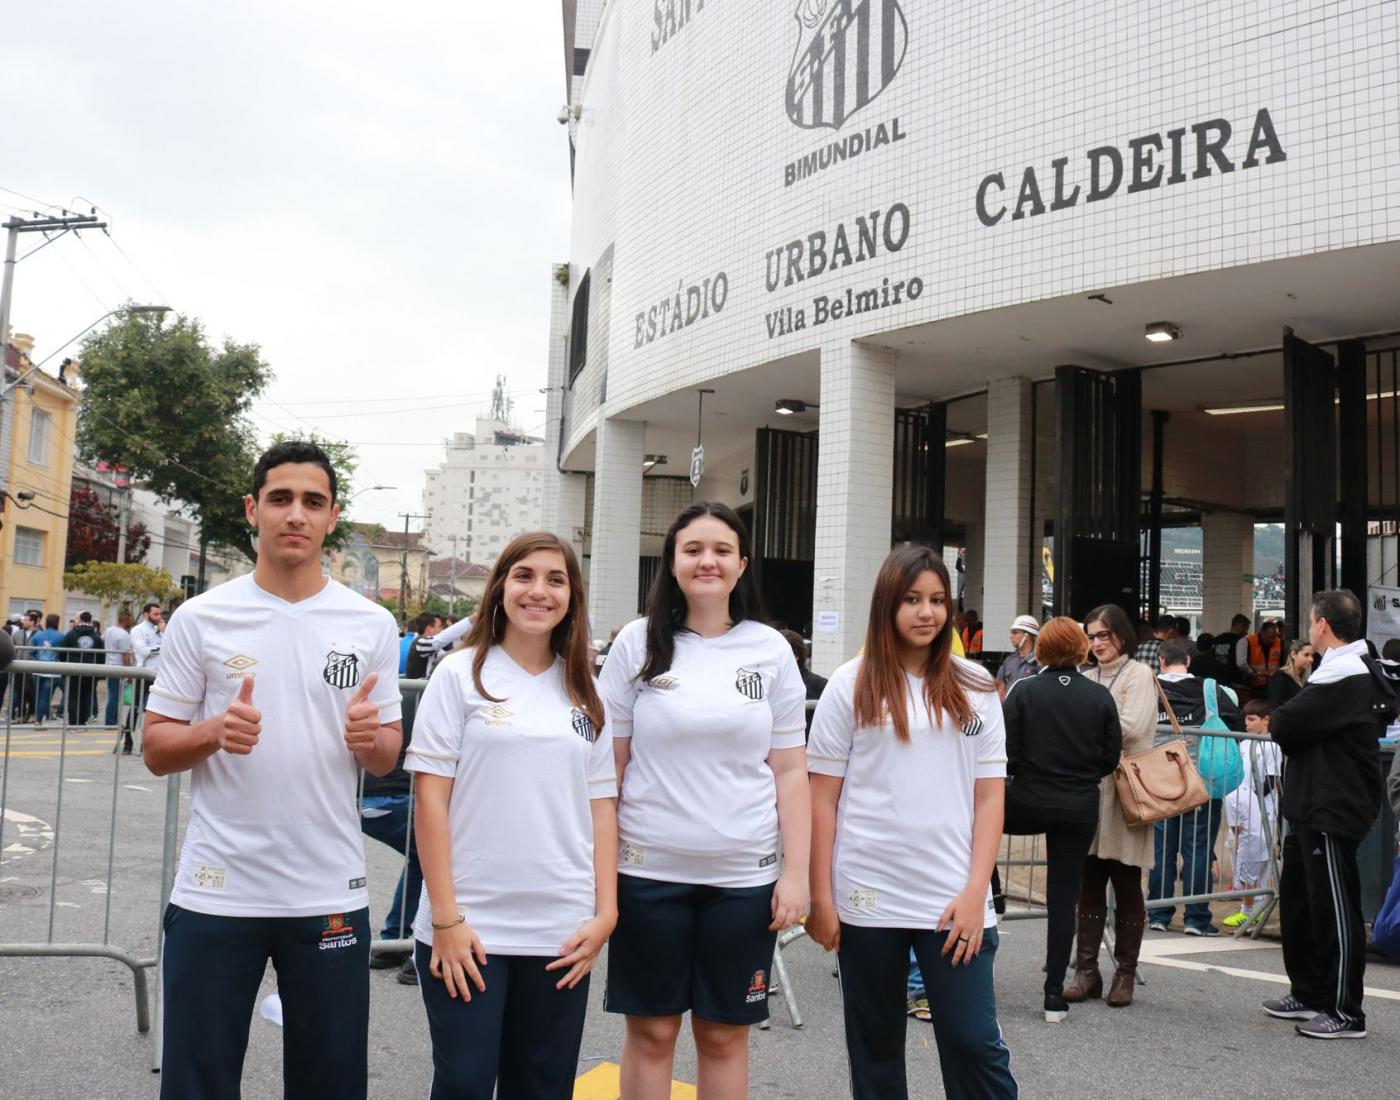 quatro alunos com camisas do santos posam na porta do estádio #pracegover